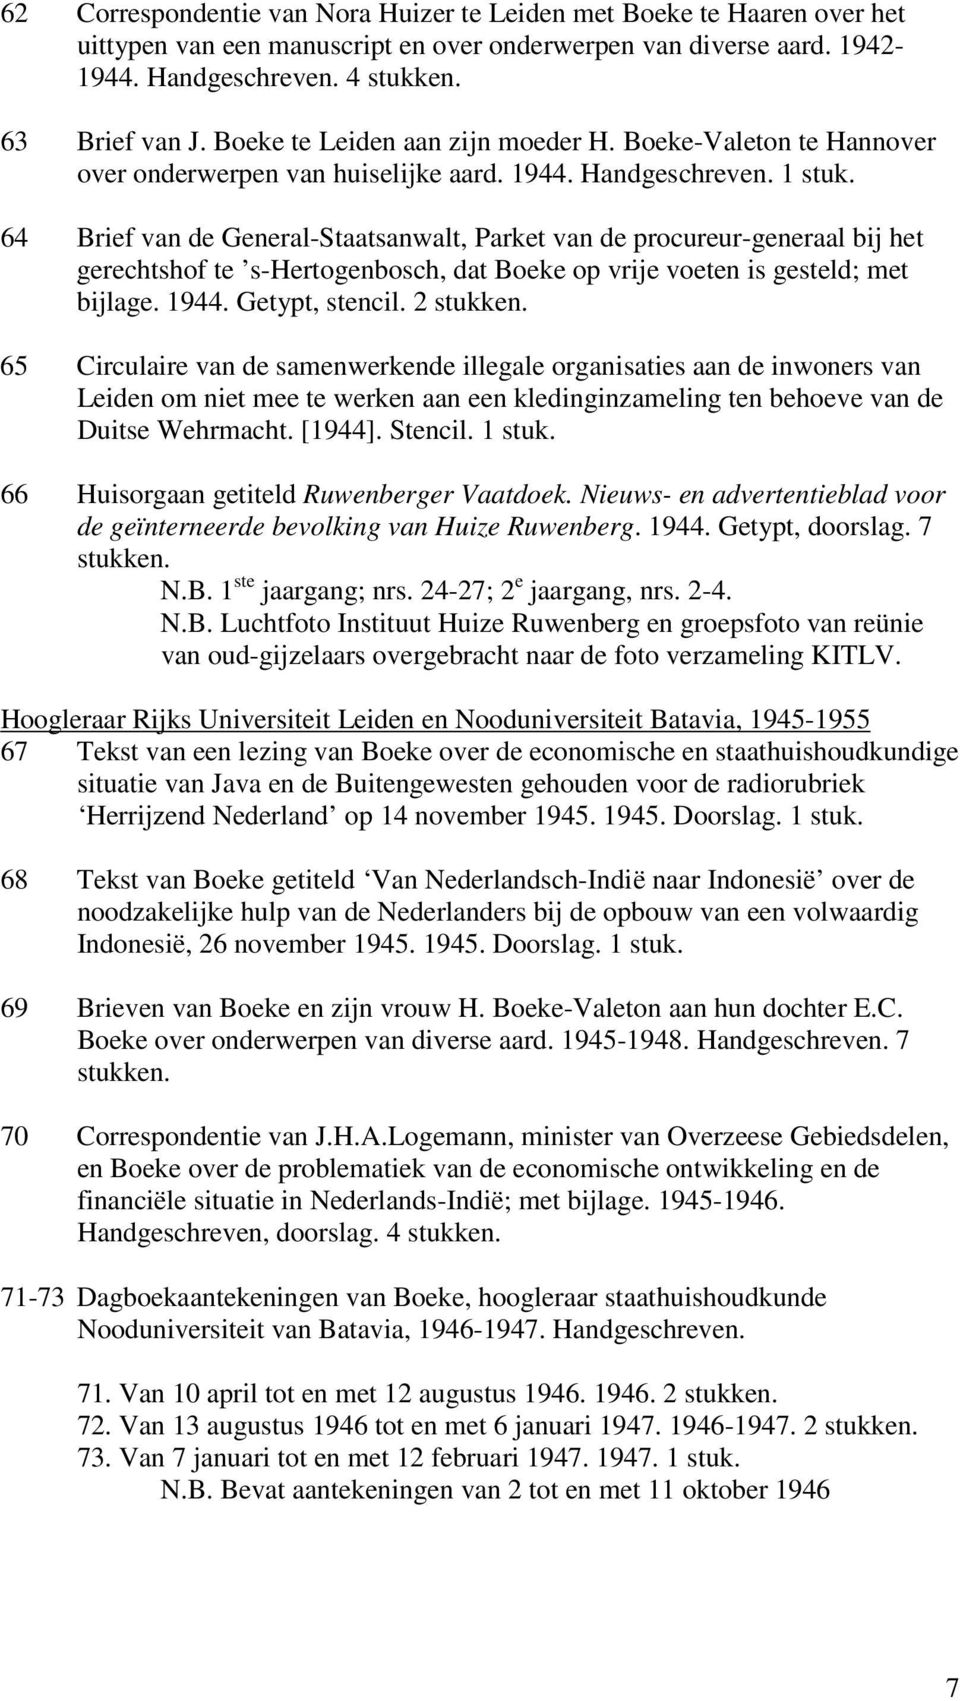 64 Brief van de General-Staatsanwalt, Parket van de procureur-generaal bij het gerechtshof te s-hertogenbosch, dat Boeke op vrije voeten is gesteld; met bijlage. 1944. Getypt, stencil. 2 stukken.